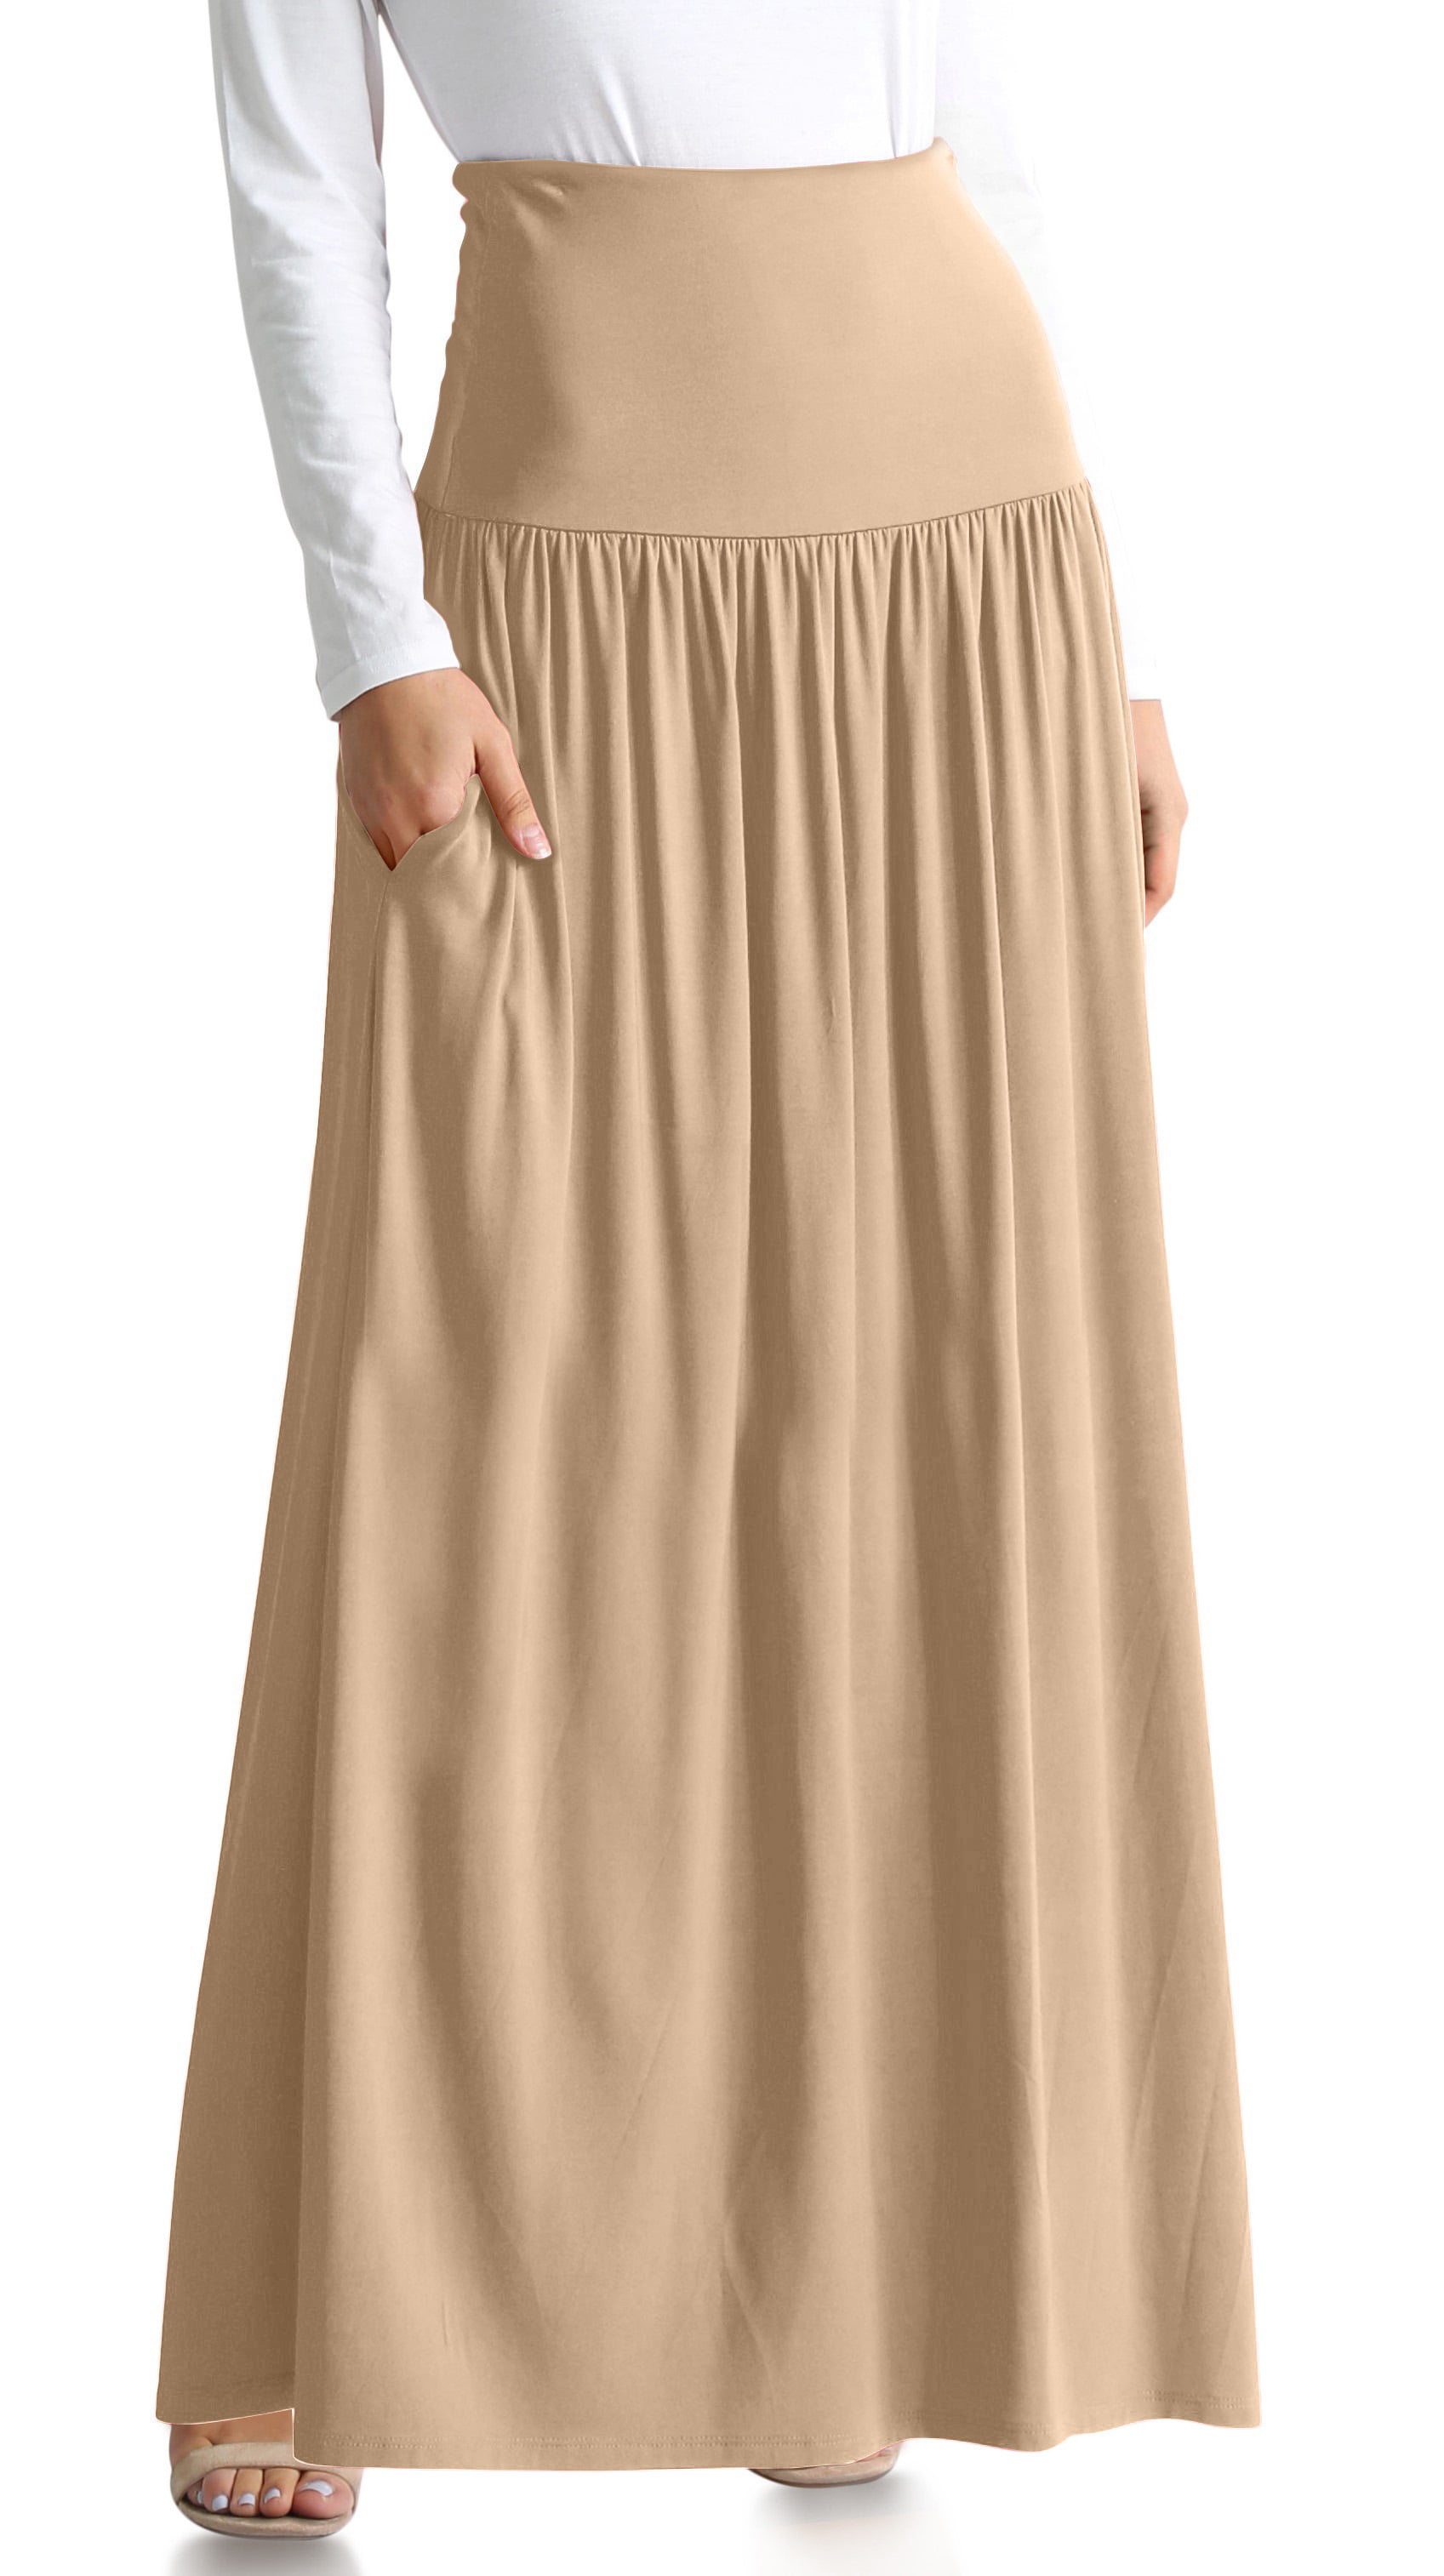 Simlu - Simlu Womens Long Maxi Skirt with Pockets Reg and Plus Size ...